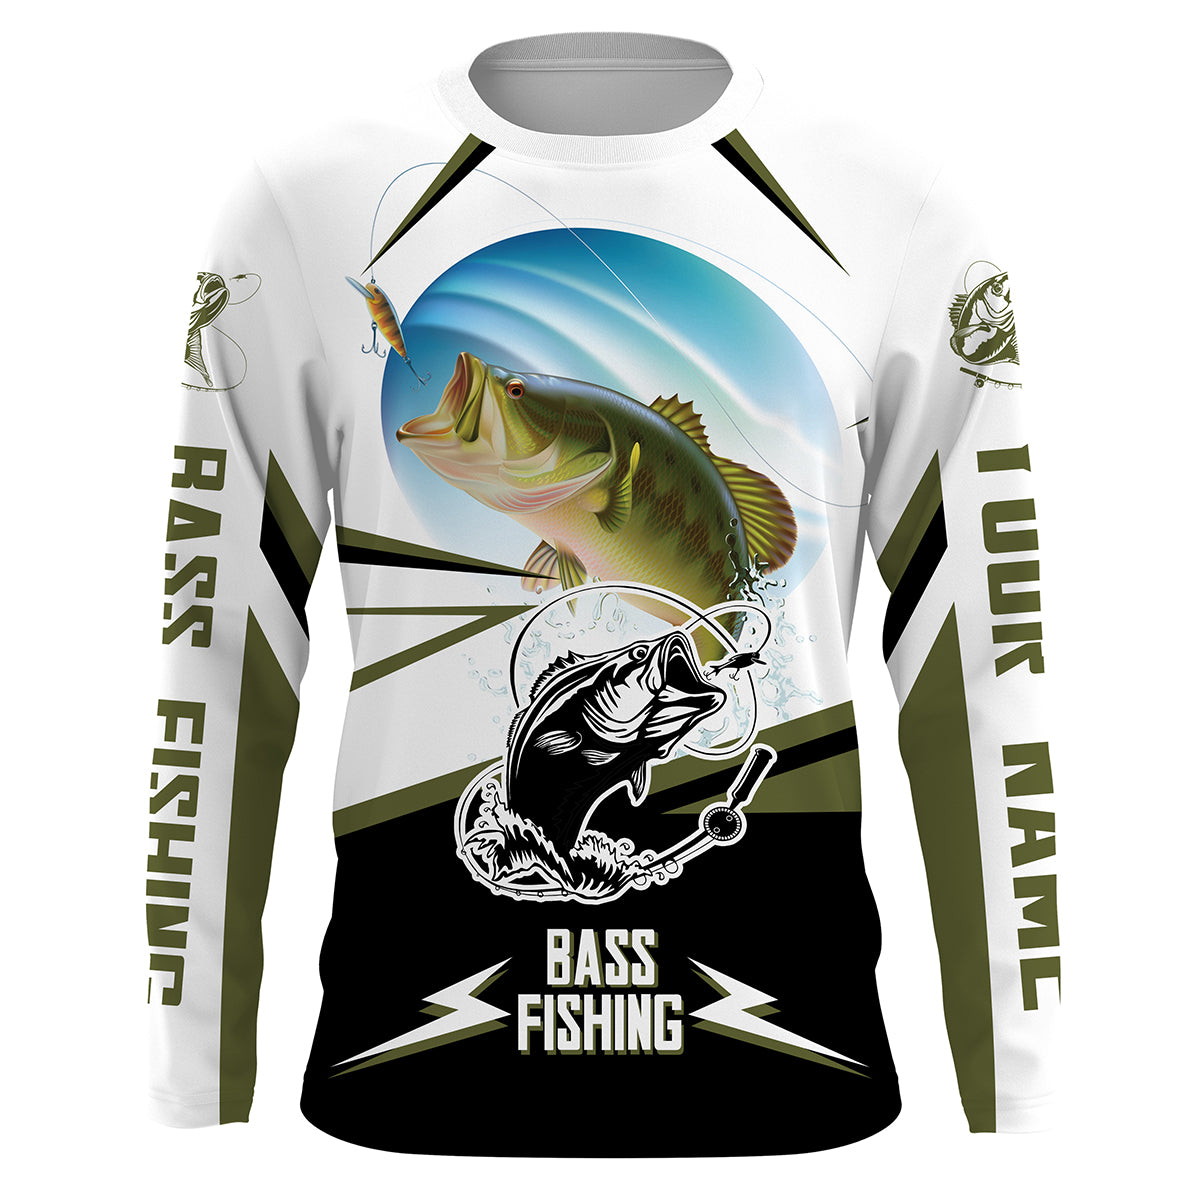 Bass Fishing Shirt